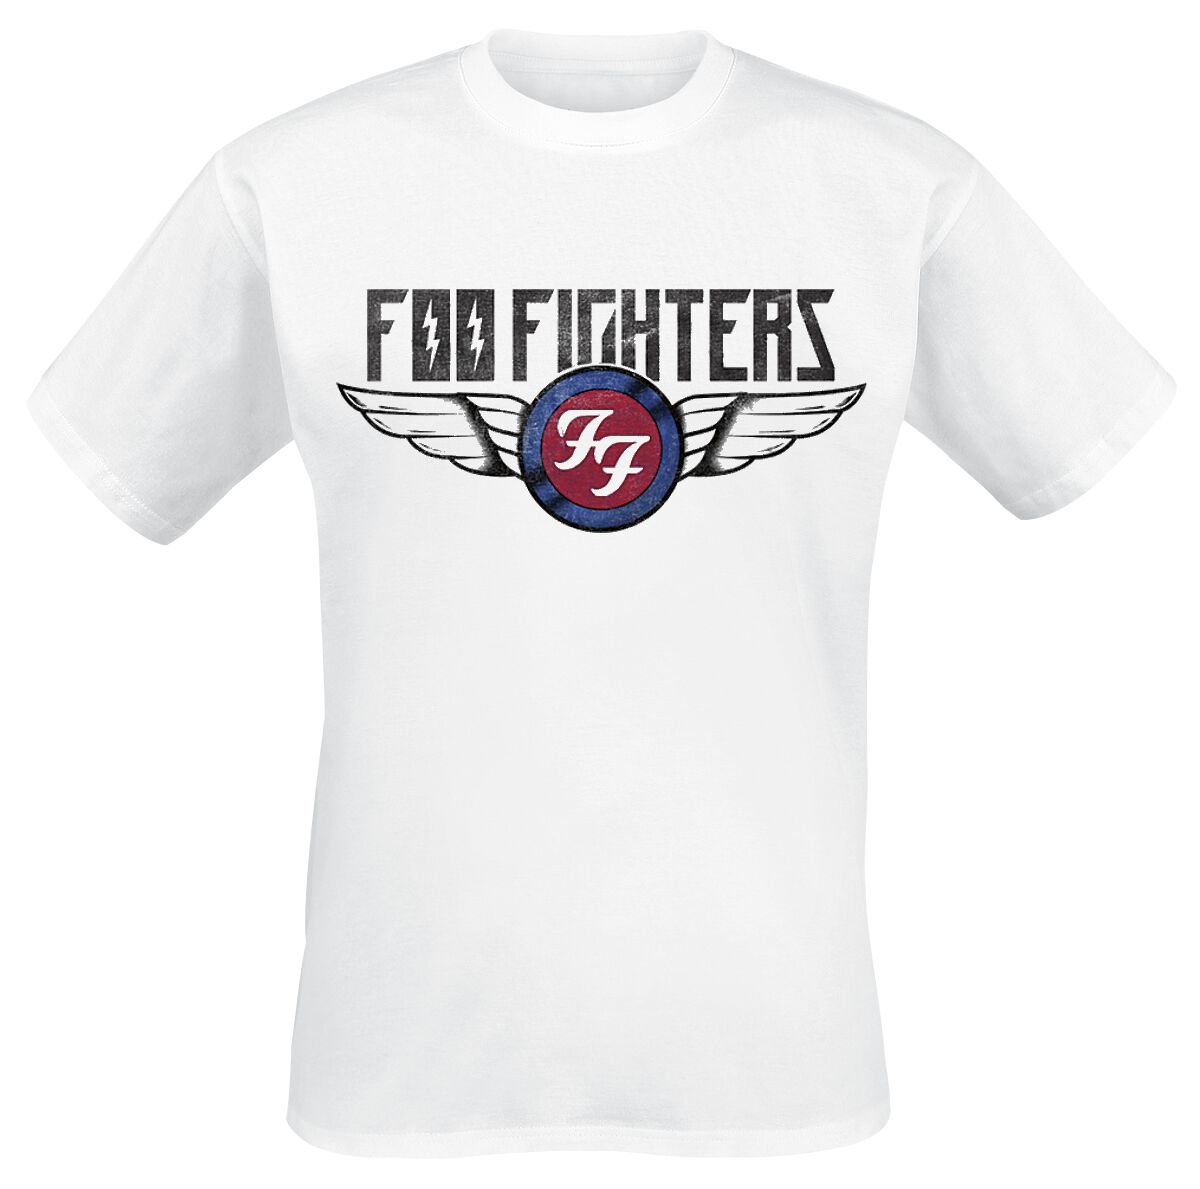 Foo Fighters T-Shirt - Flash Wings - S bis XXL - für Männer - Größe XL - weiß  - Lizenziertes Merchandise!